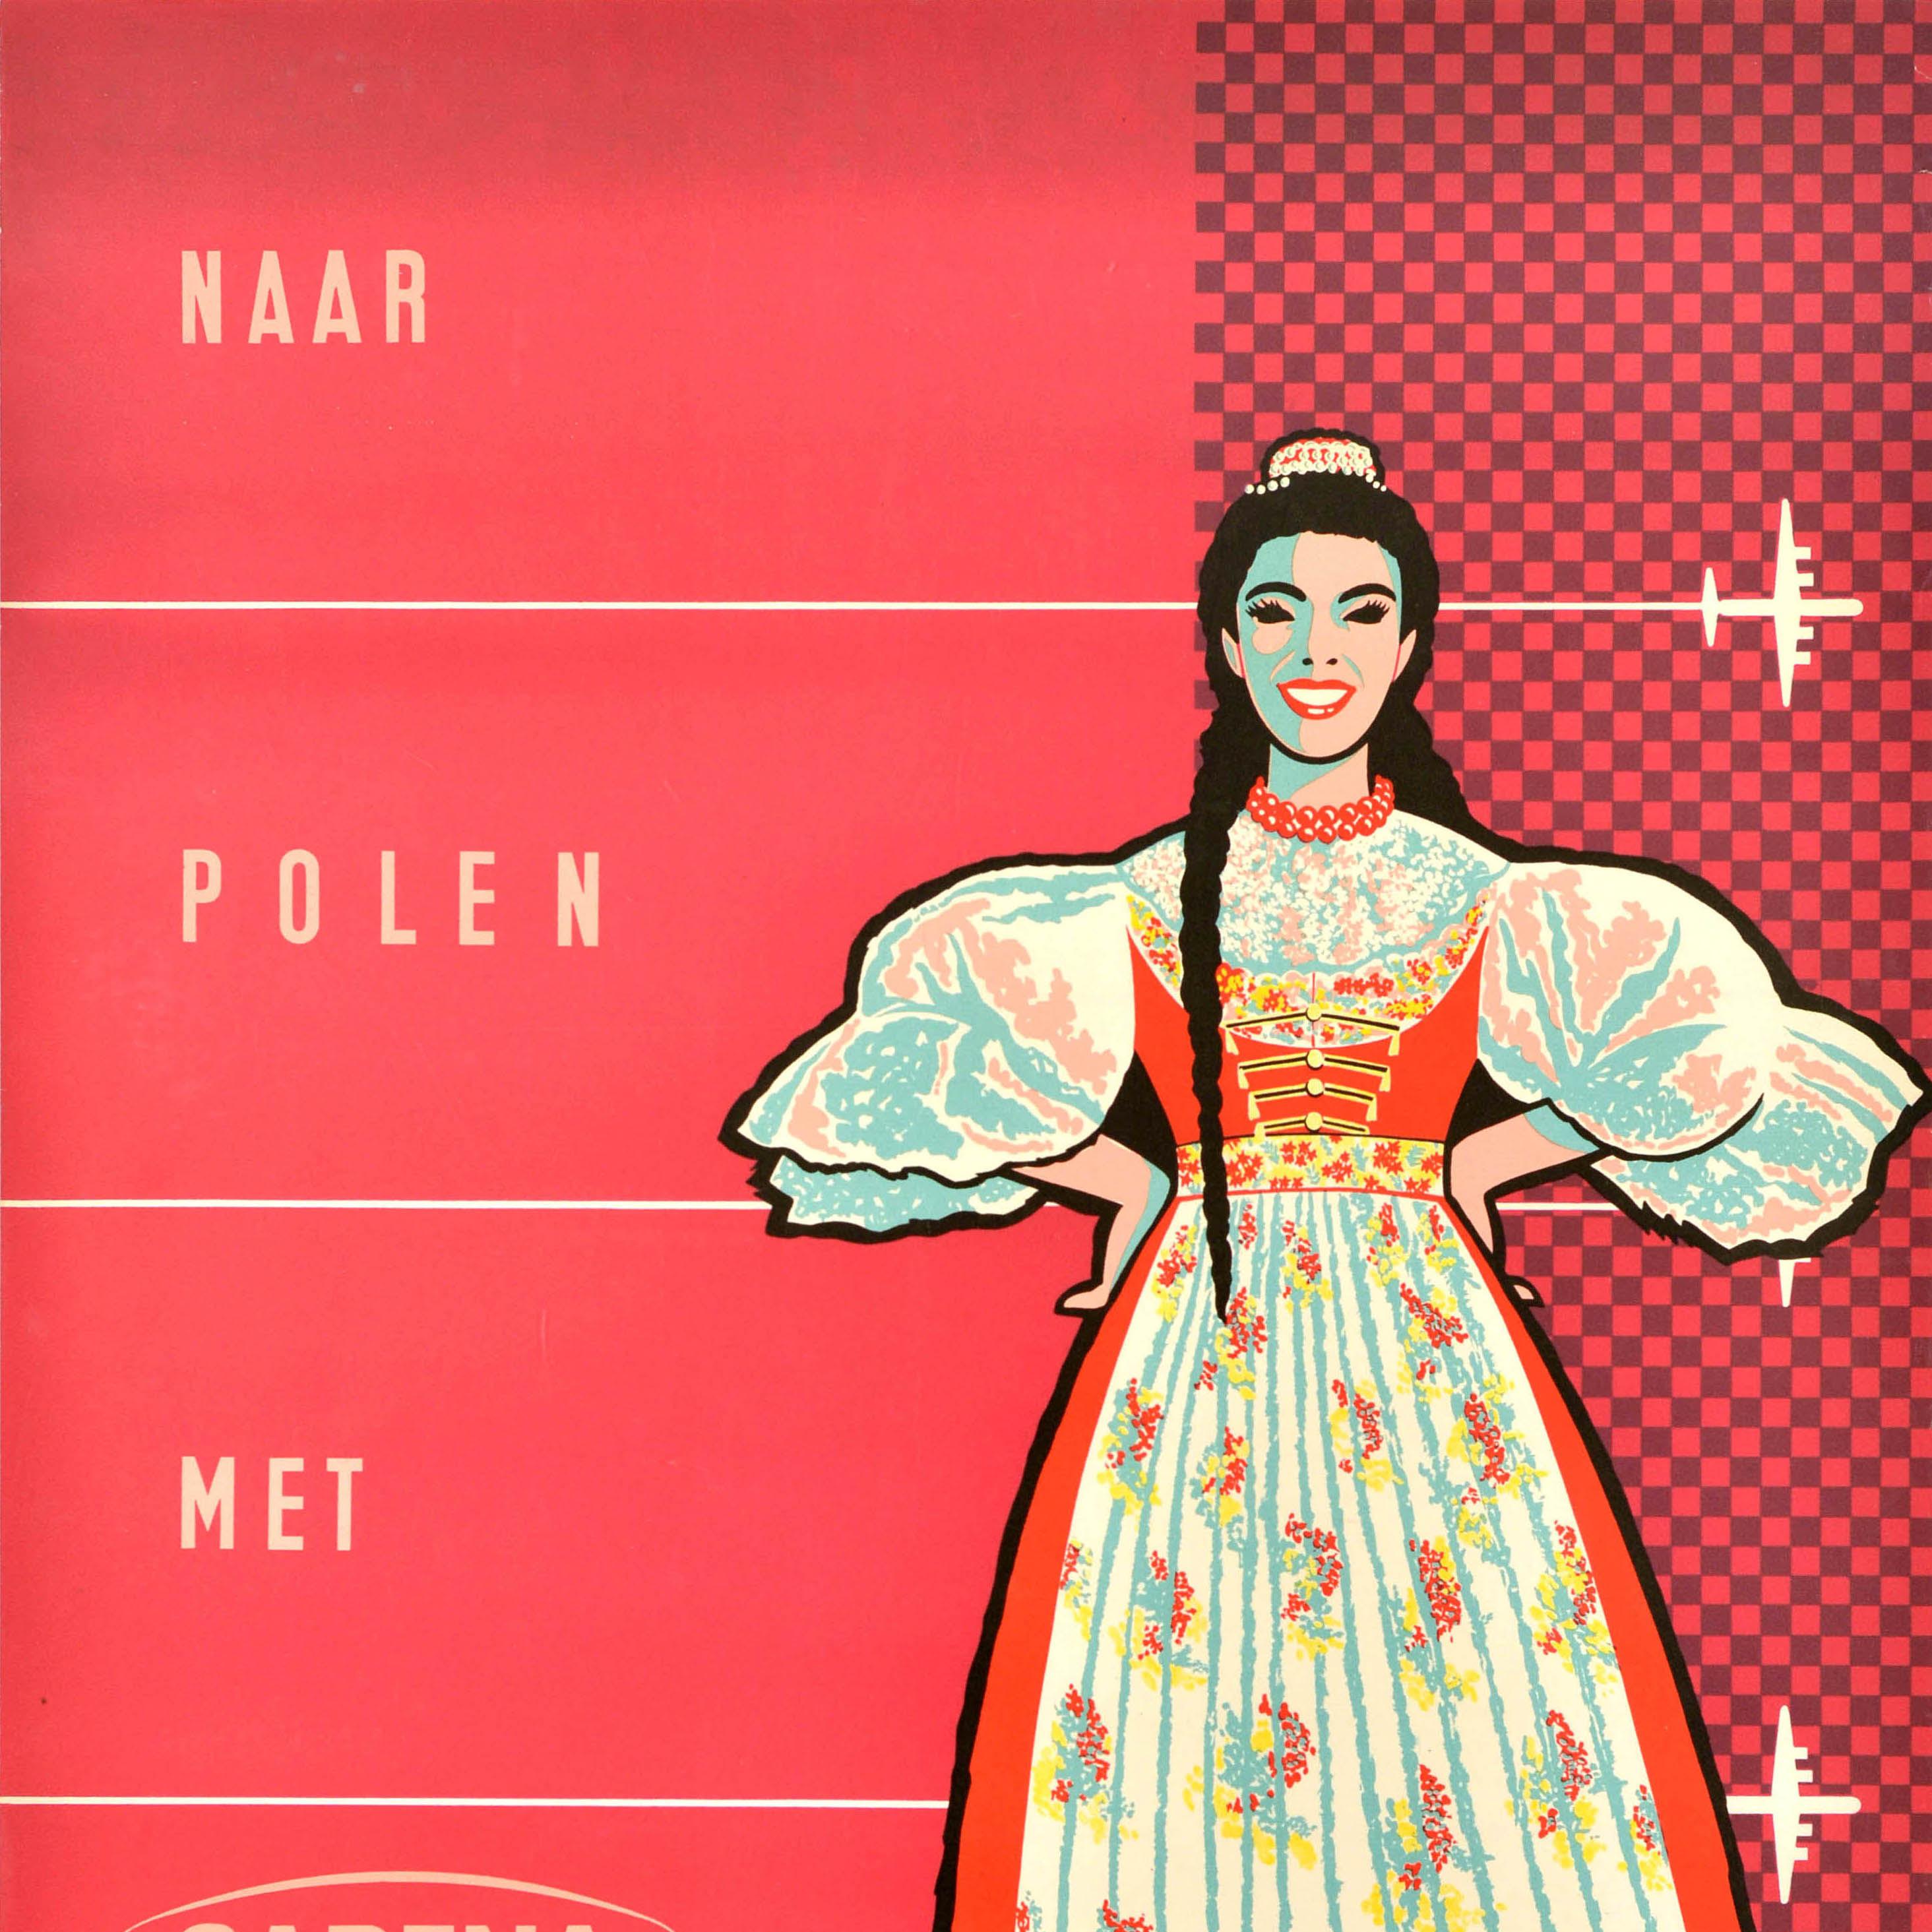 Affiche publicitaire originale de voyage - Naar Polen met Sabena / To Poland by Sabena (la compagnie aérienne nationale de la Belgique de 1923 à 2001), présentant un dessin du milieu du siècle montrant une dame souriante dans une robe polonaise